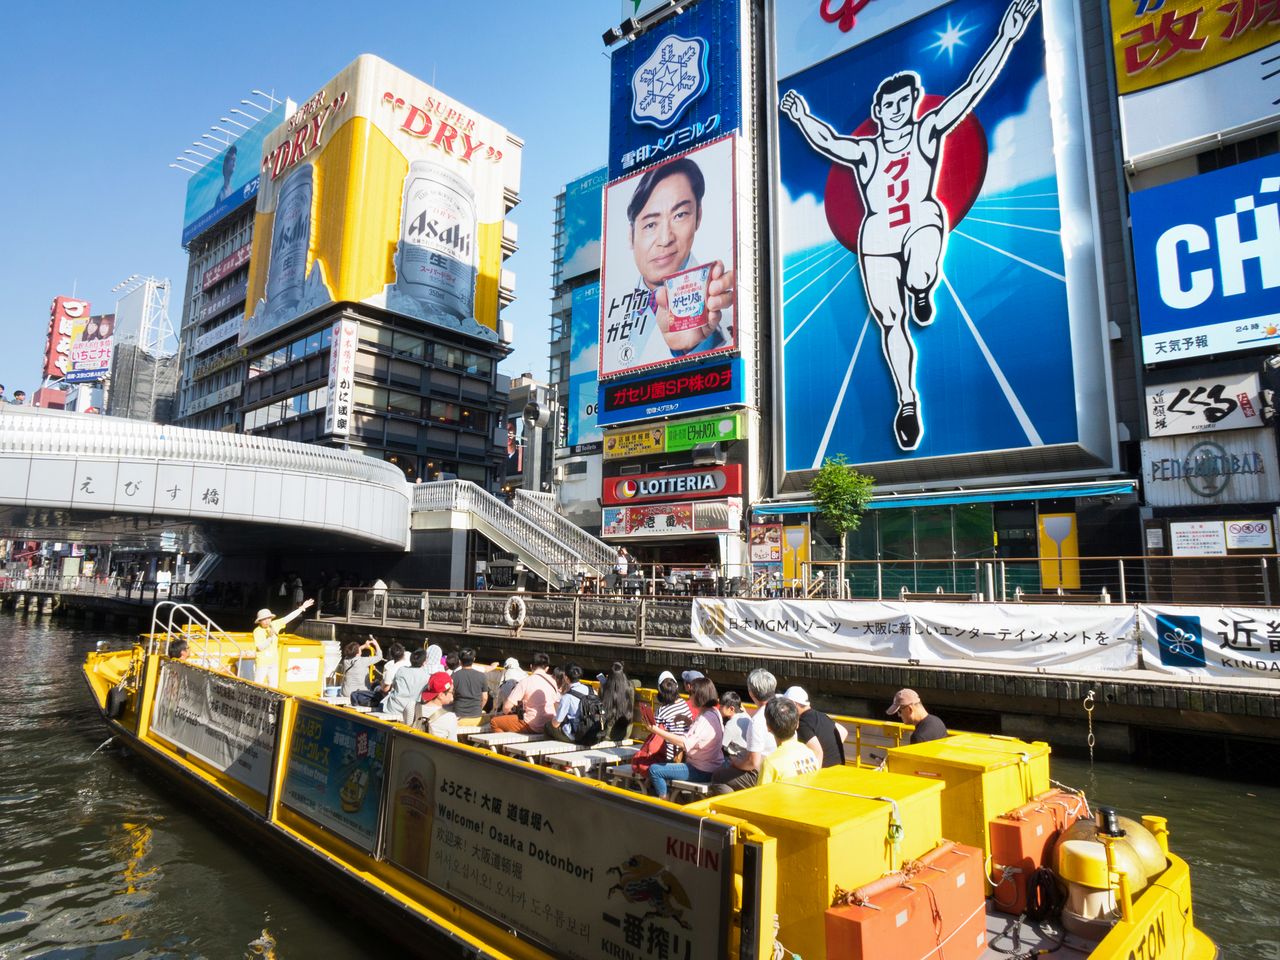 Vue emblématique de Minami : Ebisubashi, connu pour son panneau d'affichage géant d’un coureur pour la marque Glico. La croisière sur la rivière Tonbori rencontre un franc succès auprès des touristes qui souhaitent voir Dôtonbori depuis un bateau.